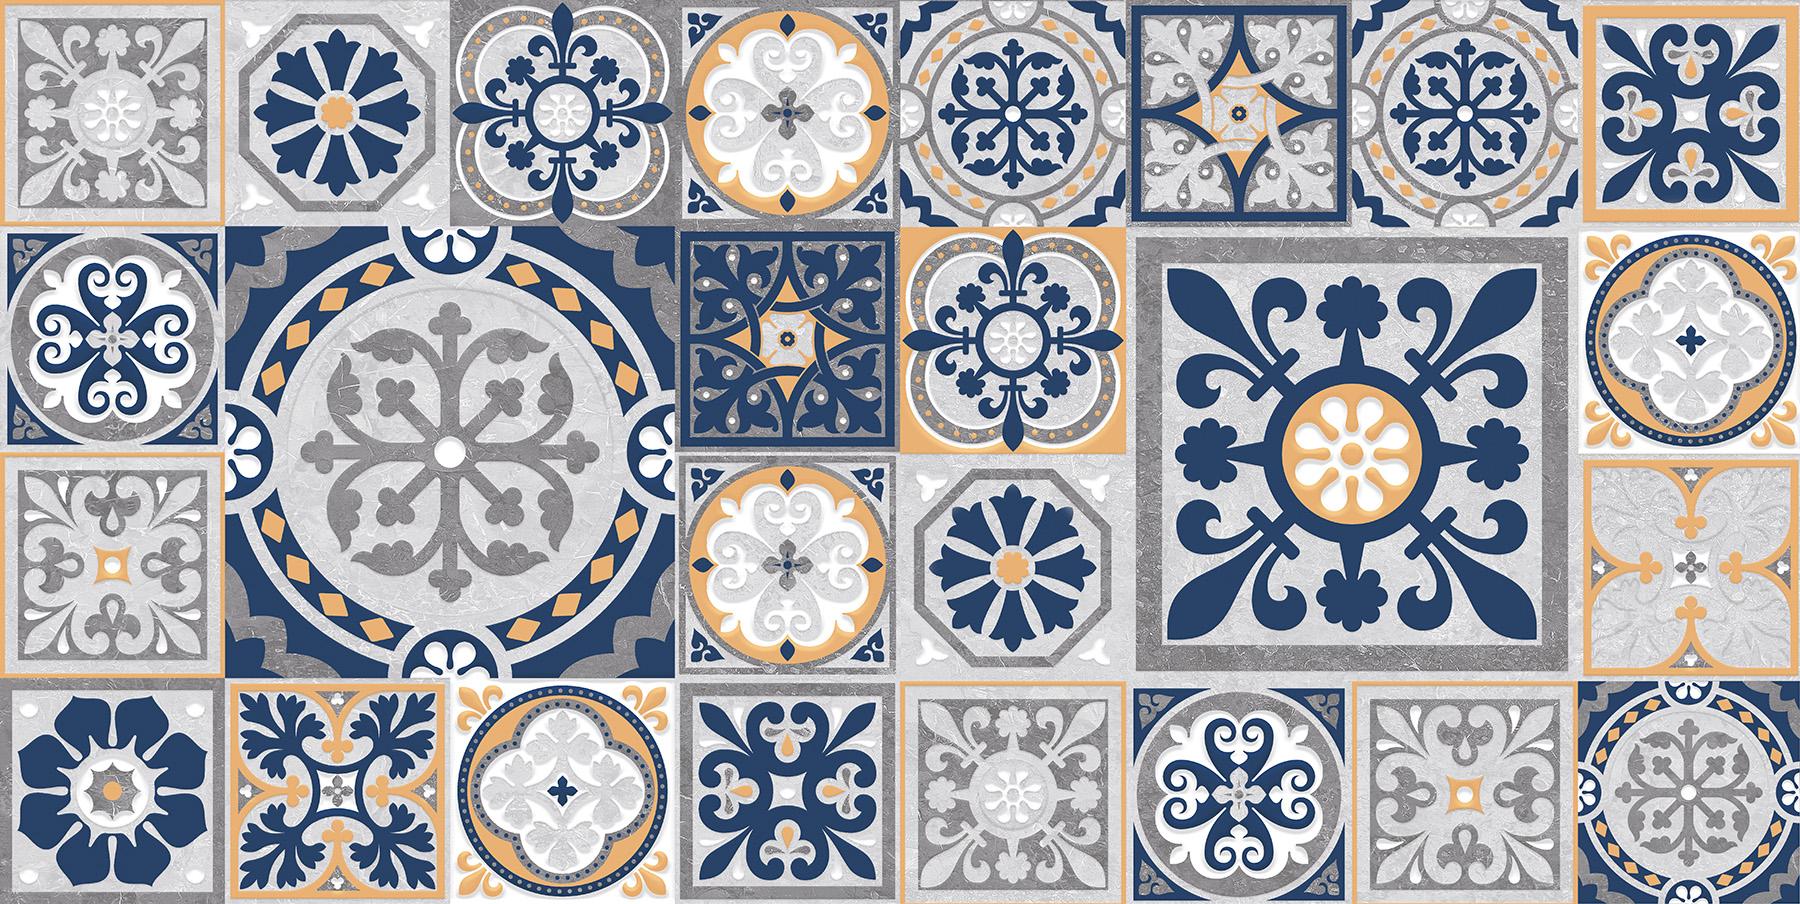 Digital Glazed Vitrified Tiles for Bathroom Tiles, Living Room Tiles, Kitchen Tiles, Bedroom Tiles, Balcony Tiles